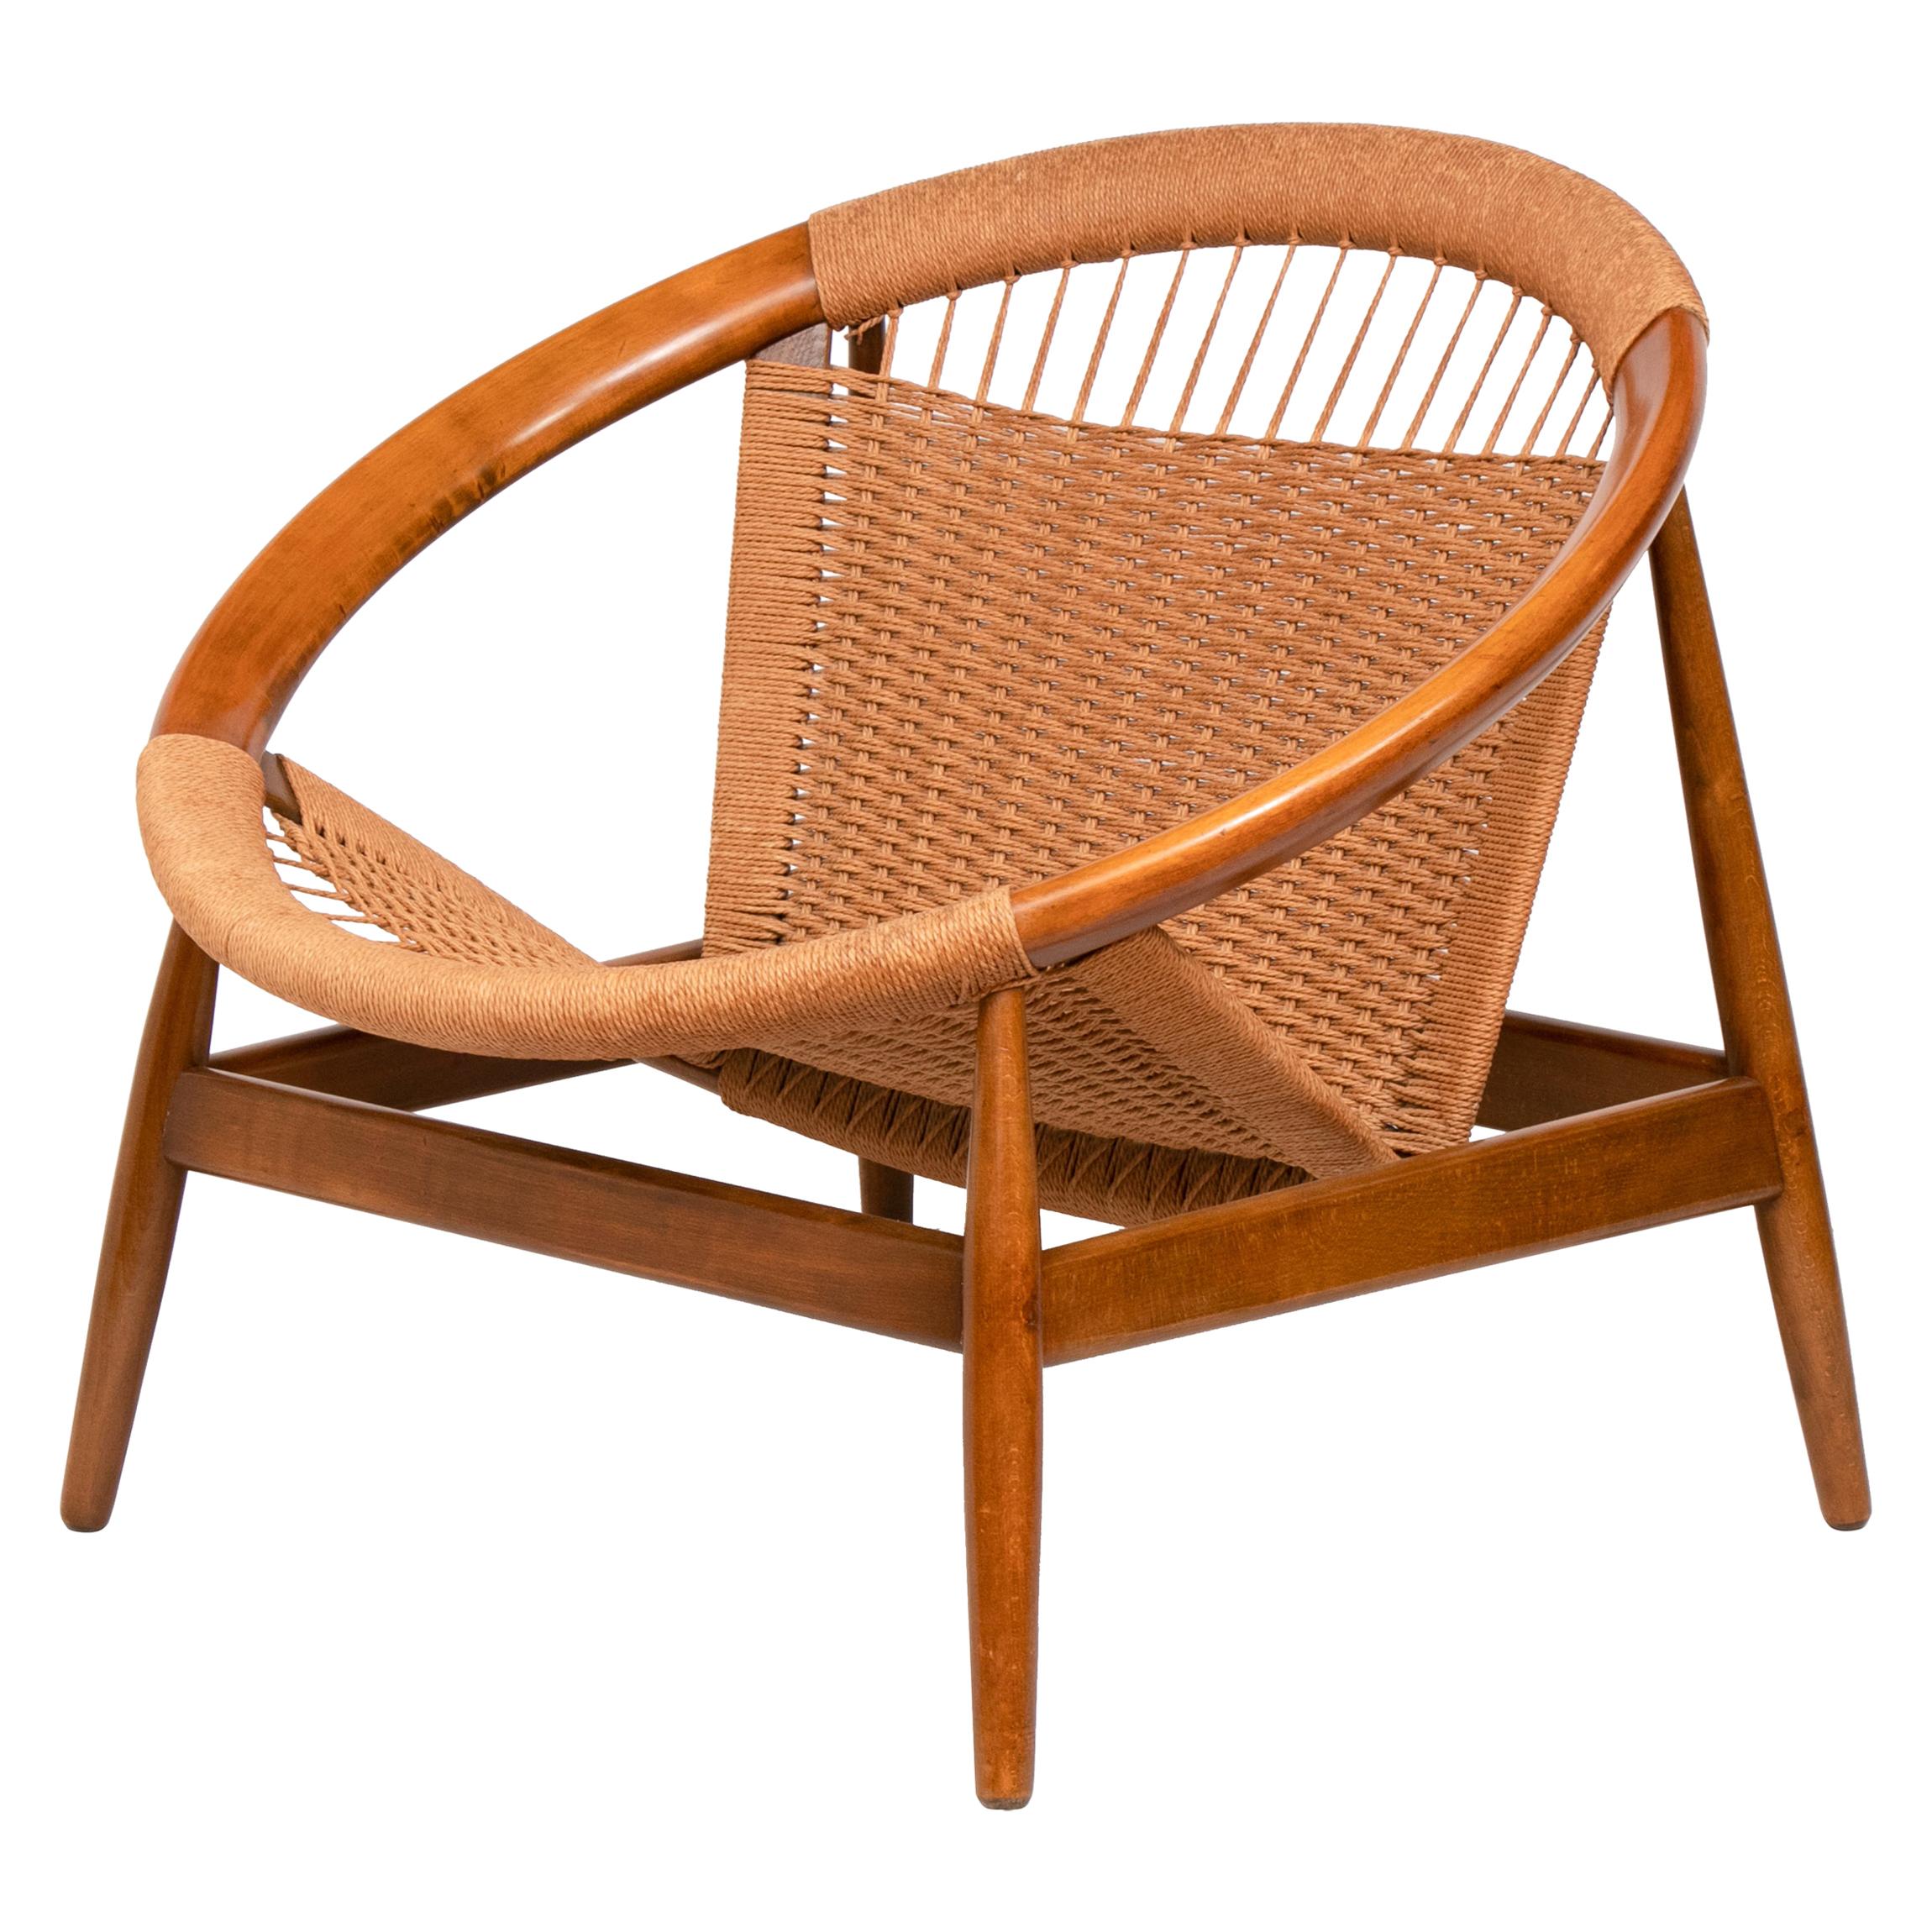 Danish Mcentury Illum Wikkelso Ringstol Teak and Woven Cord model 23 Chair For Sale